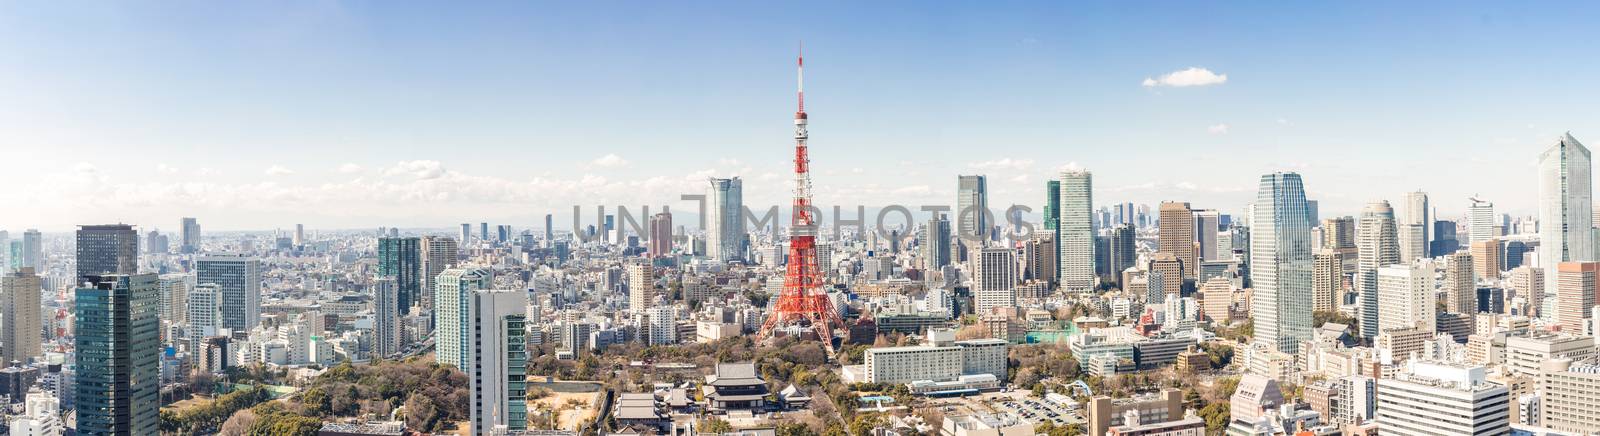 Tokyo Tower, Tokyo Japan by vichie81